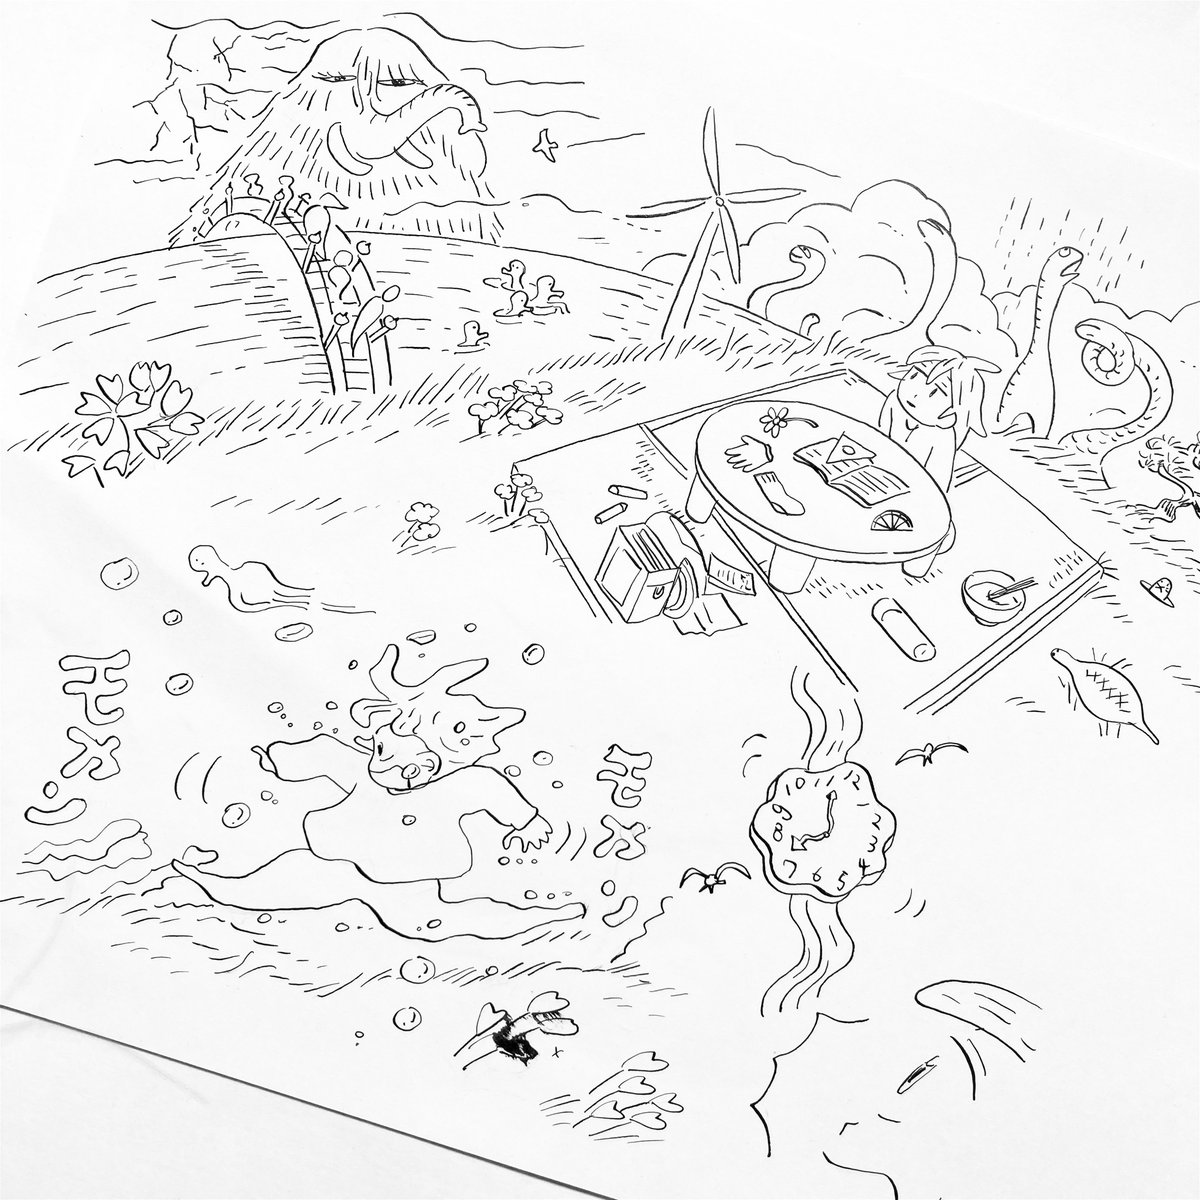 『ここは鴨川ゲーム製作所』

本日発売のまんがライフオリジナルに最新話が掲載されています。最近よく夢を見るので思い出しながら描きました🦣 